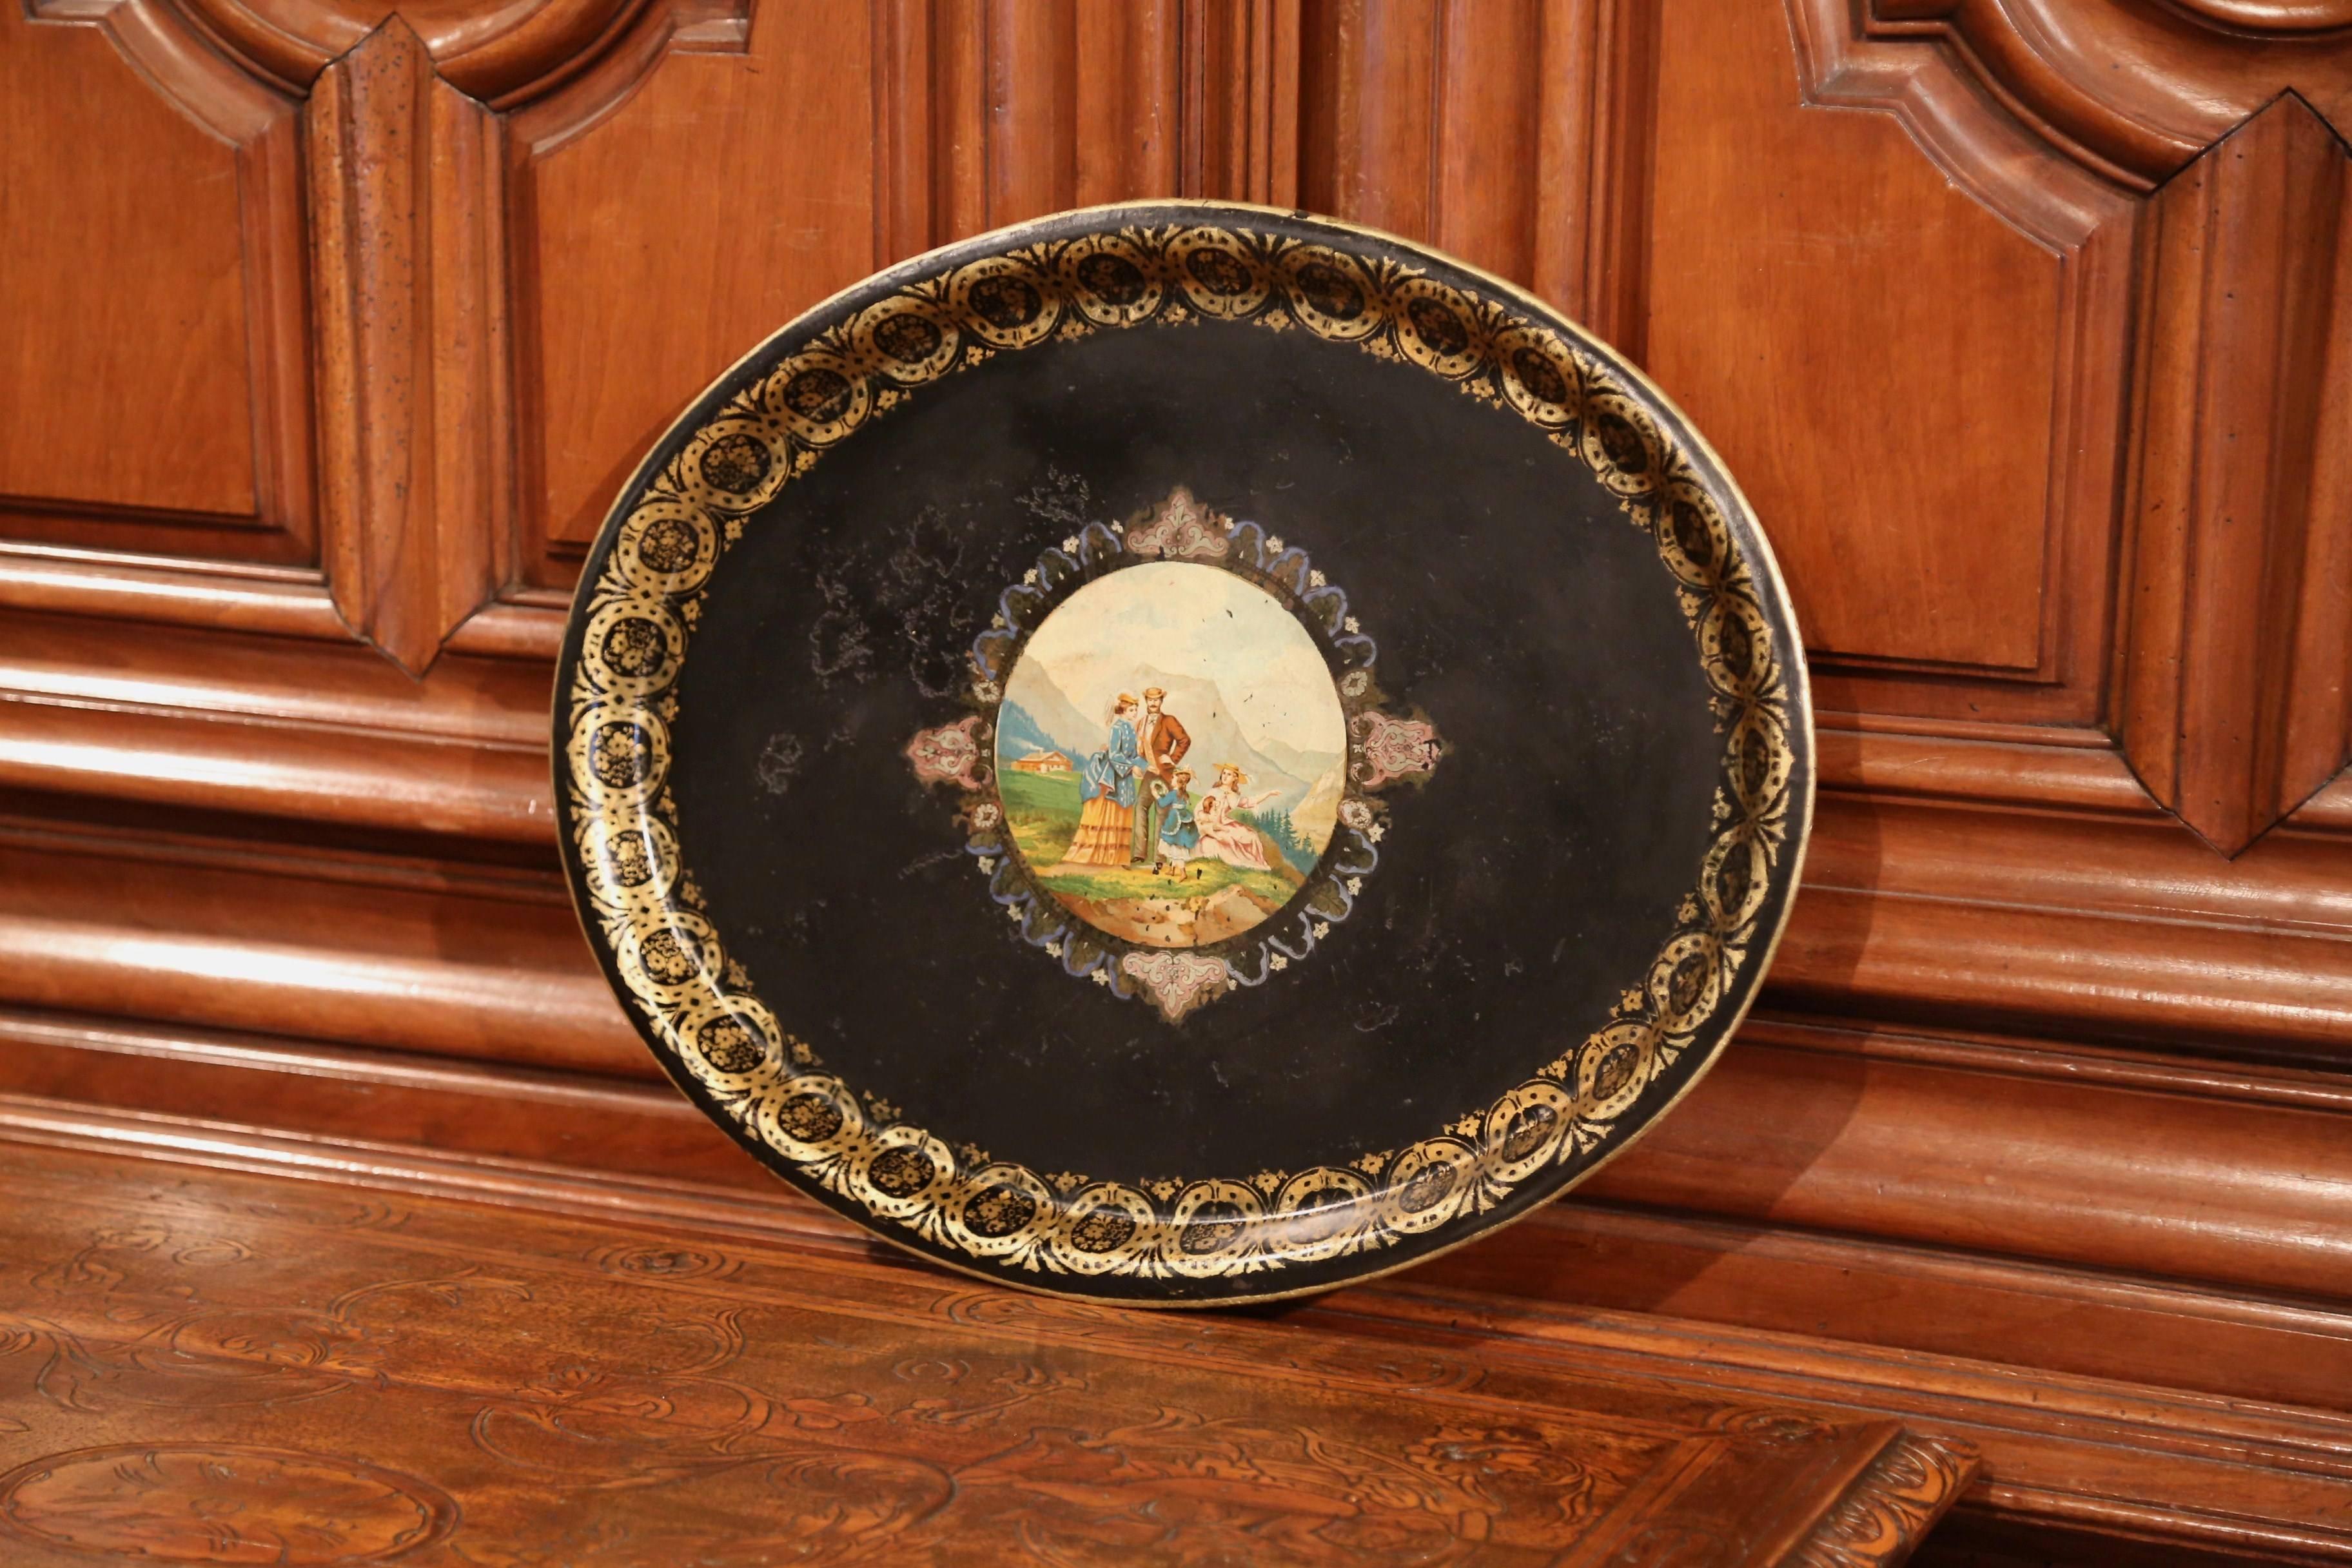 Dieses elegante antike Tablett wurde um 1870 in Frankreich hergestellt. Die ovale, schwarze Platte ist mit einem handgemalten, vergoldeten Dekor um den Rand herum verziert und zeigt in der Mitte eine farbenfrohe Landschaftsszene. Die Szene zeigt